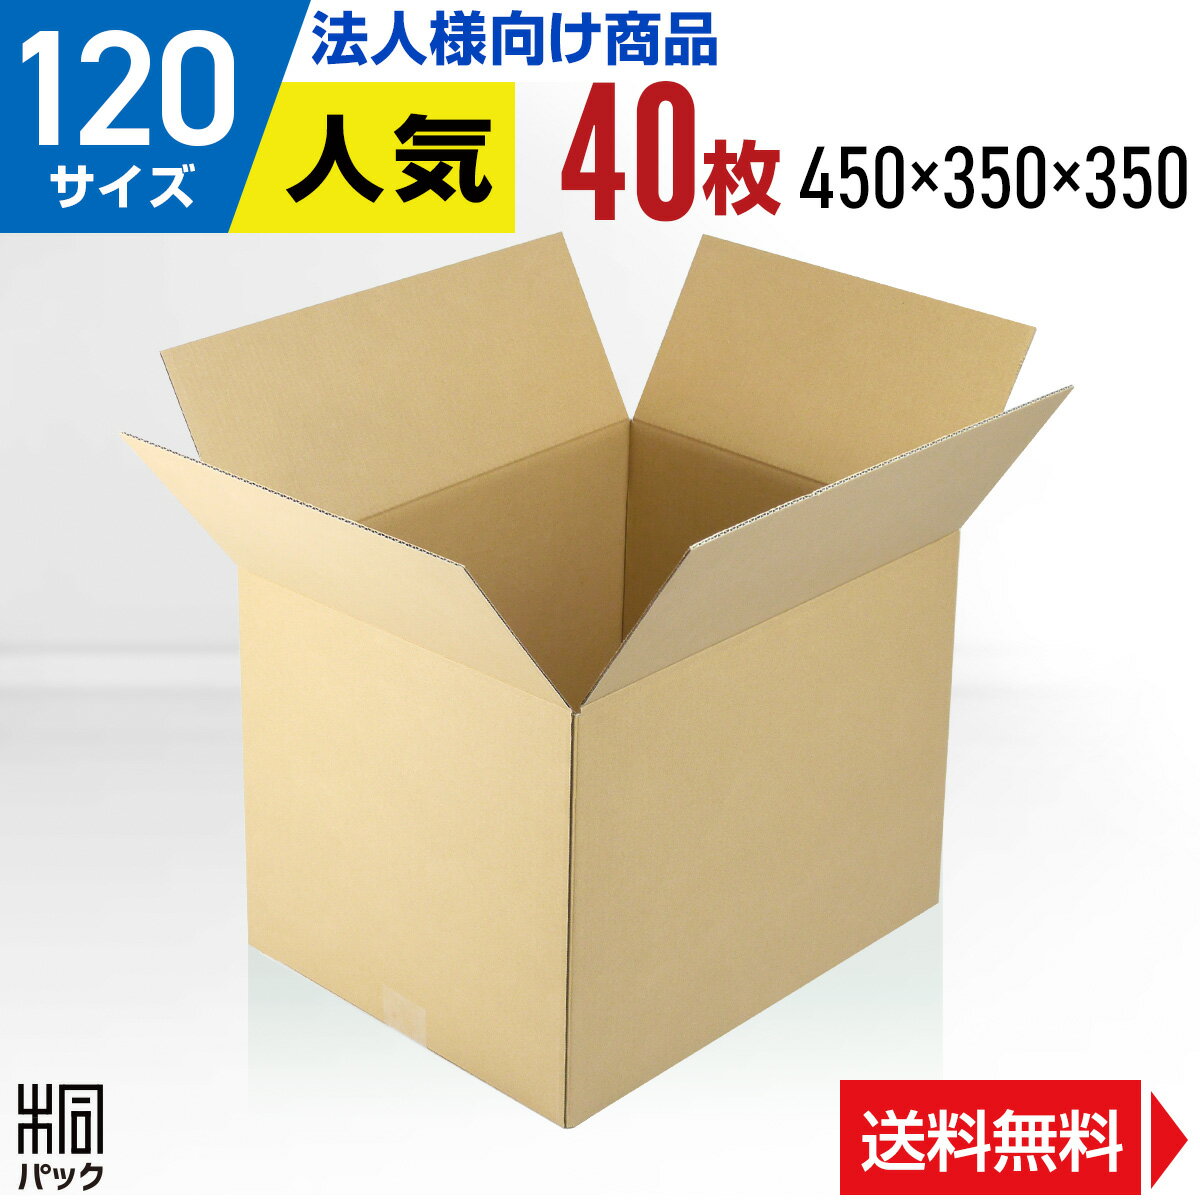 【法人特価】段ボール 箱 120サイズ 40枚 (3mm厚 